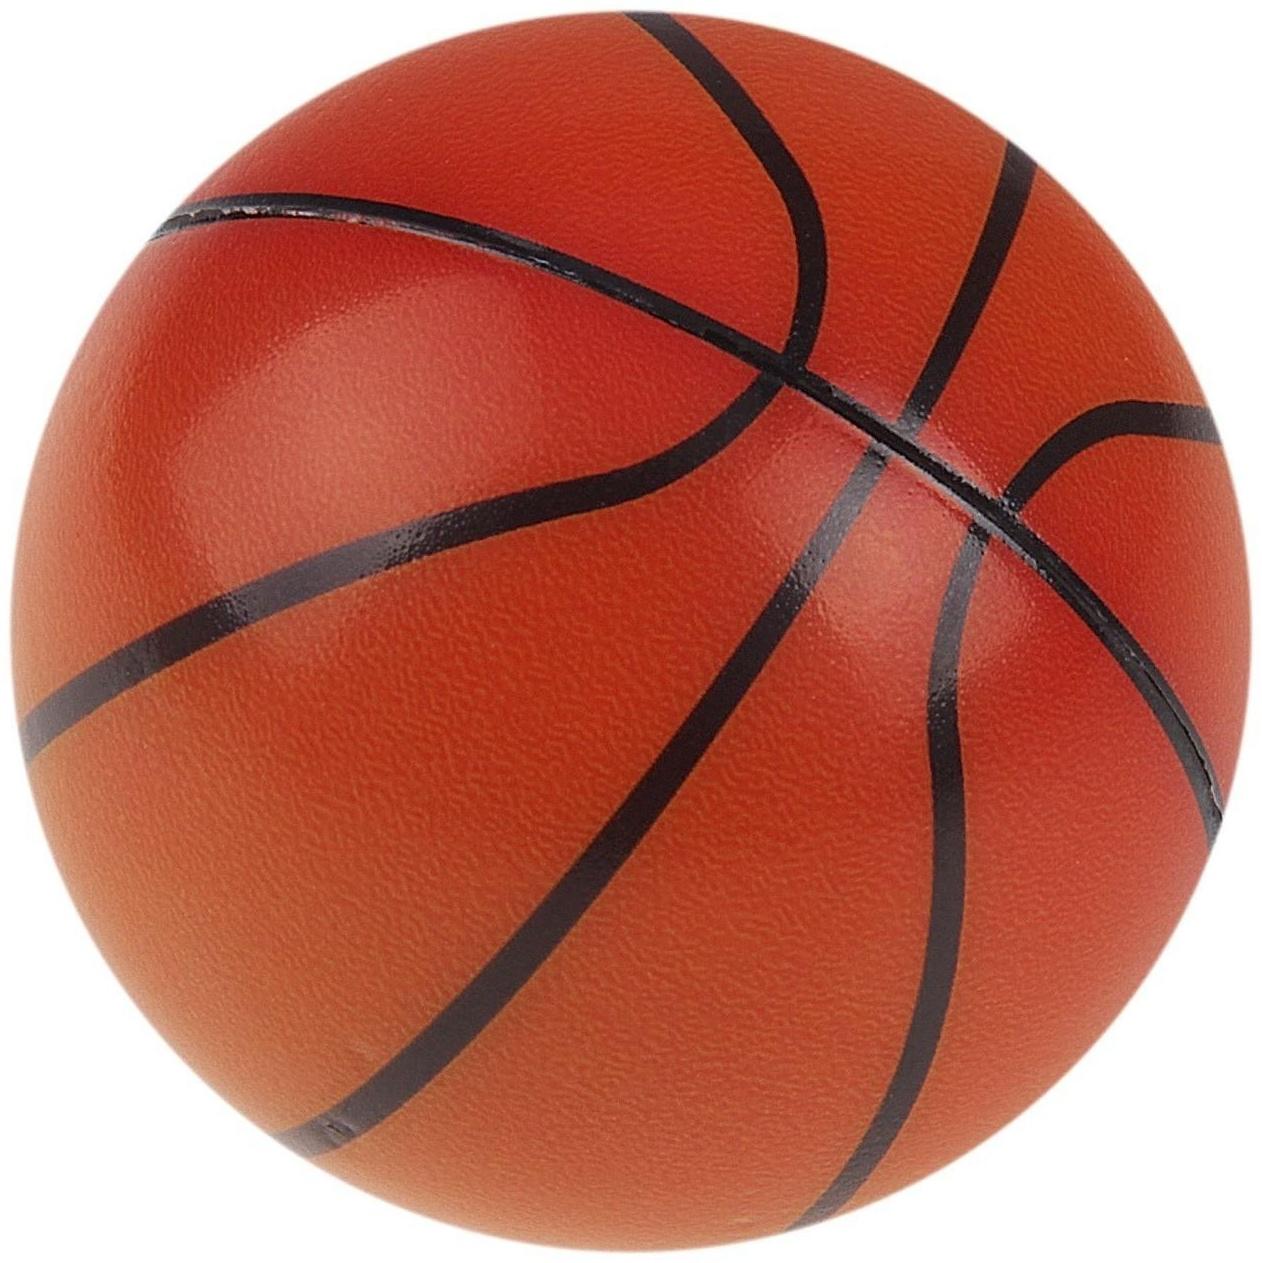 Мячик «Баскетбол», мягкий, 6,3 см., 1 шт.